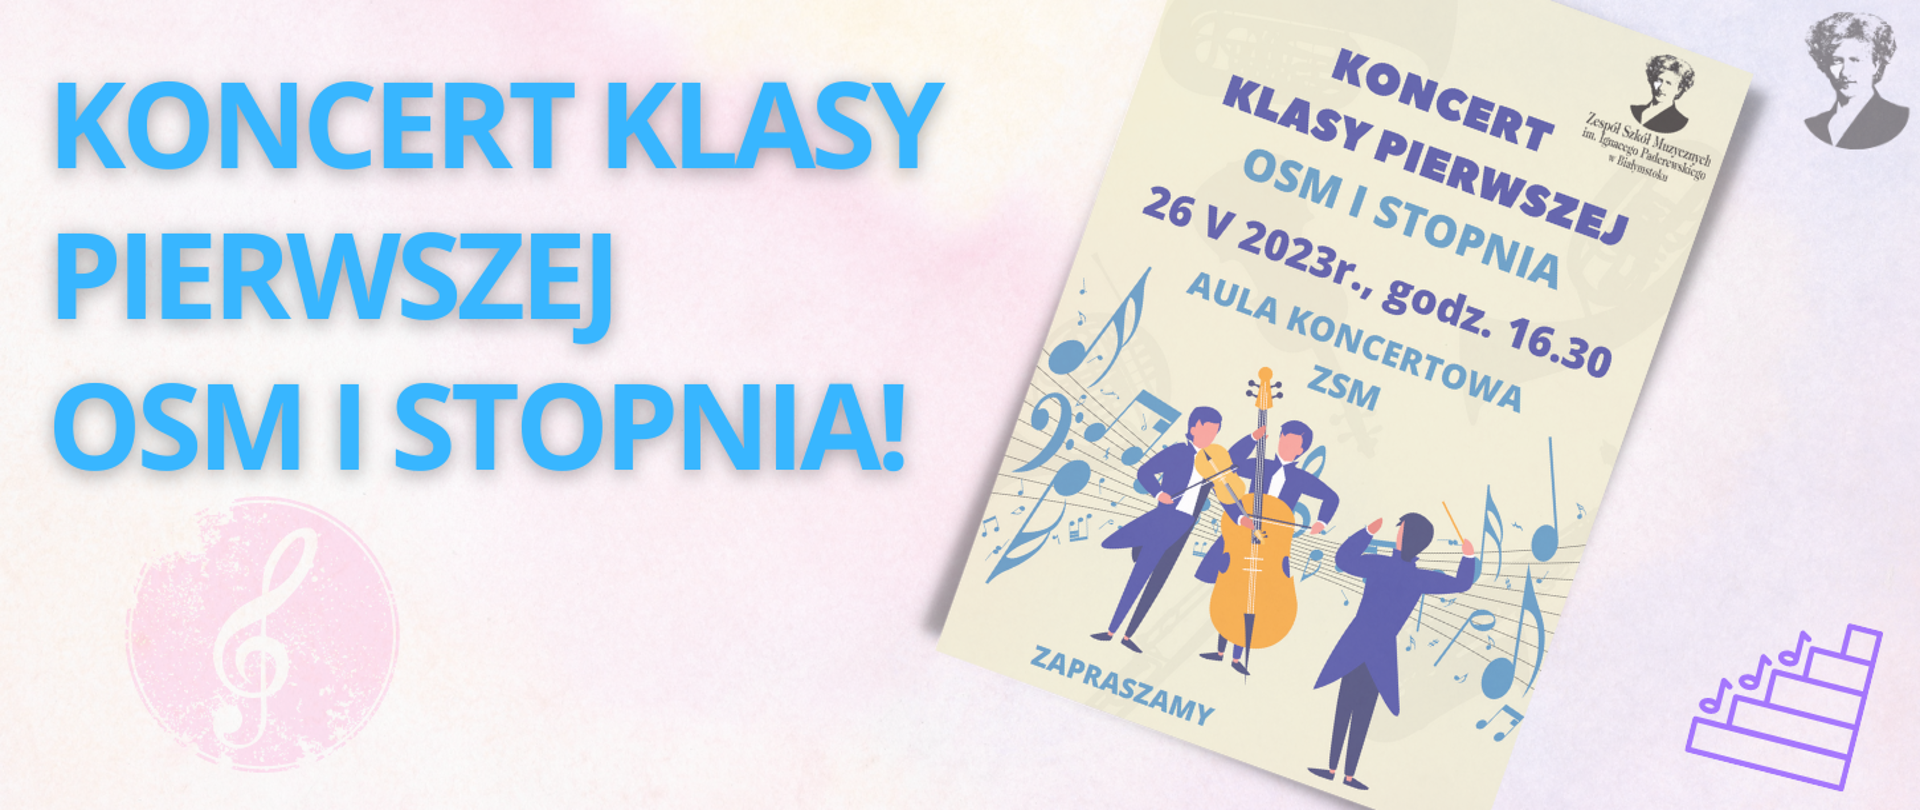 Różowo-fioletowa grafika z niebieskim napisem "KONCERT KLASY PIERWSZEJ OSM I STOPNIA", po prawej stronie miniatura plakatu wydarzenia i podobizna Paderewskiego.